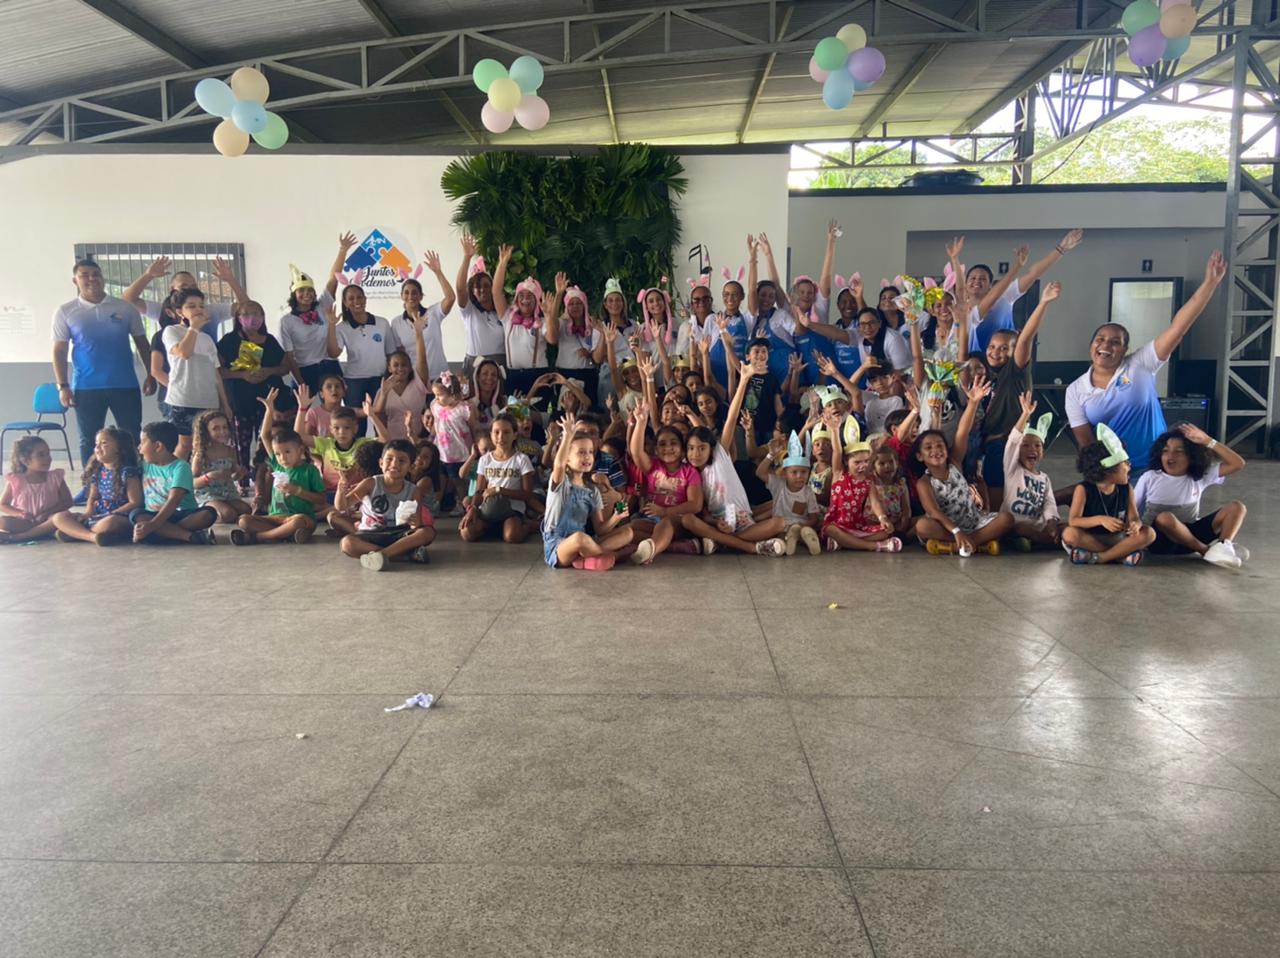 Equipe do Abrigo do Marinheiro Belém, Voluntárias Cisne Branco e crianças participantes da Páscoa do Projeto Integração.